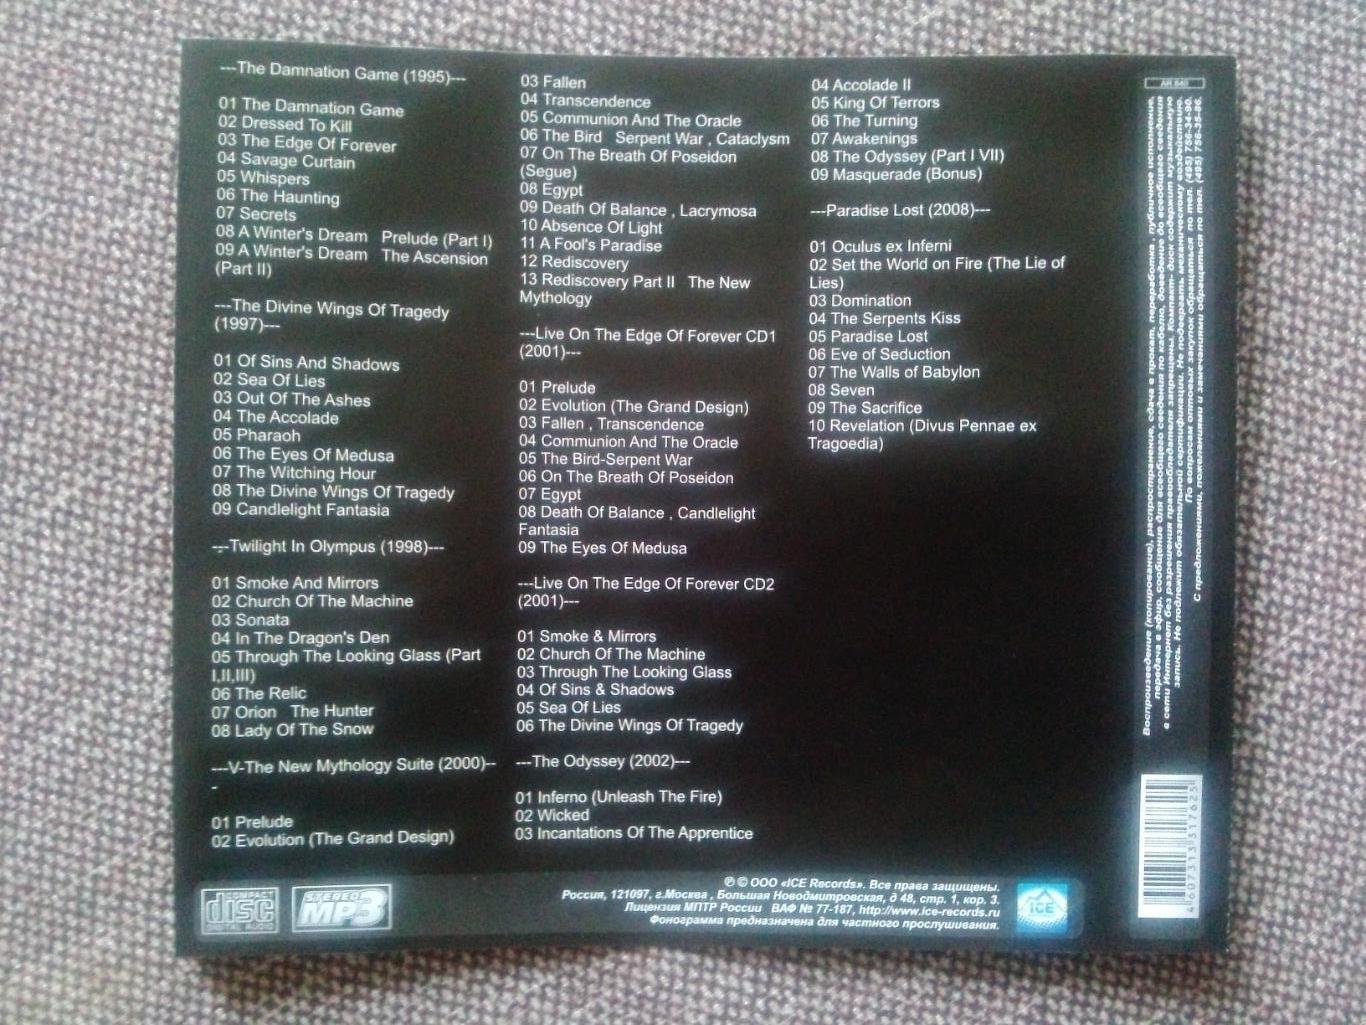 MP - 3 CD диск : группаSymphony X1995 - 2008 гг. 8 альбомов Рок - музыка 5